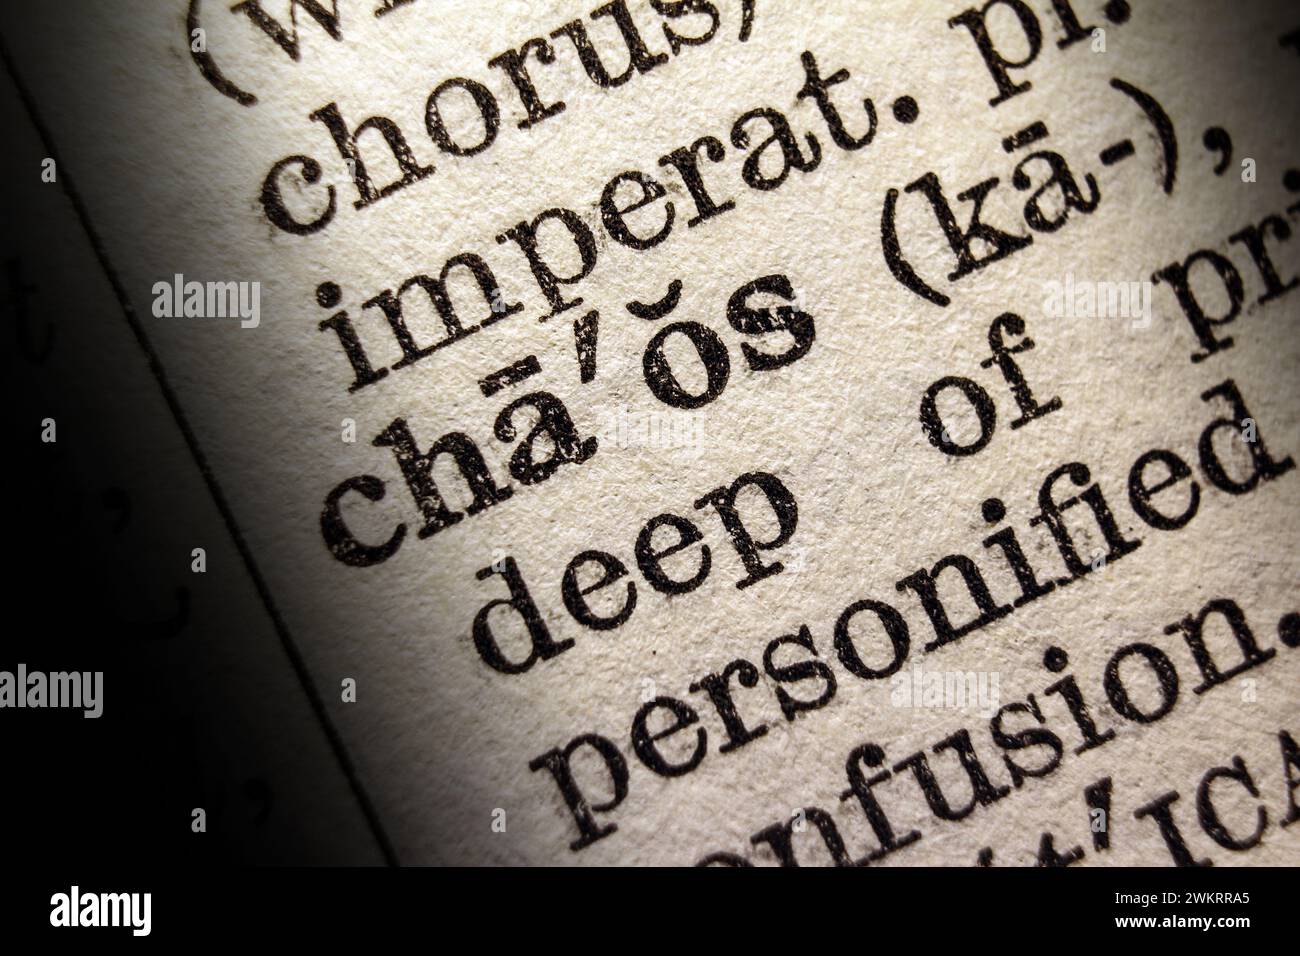 Definizione del caos delle parole sulla pagina del dizionario, primo piano Foto Stock